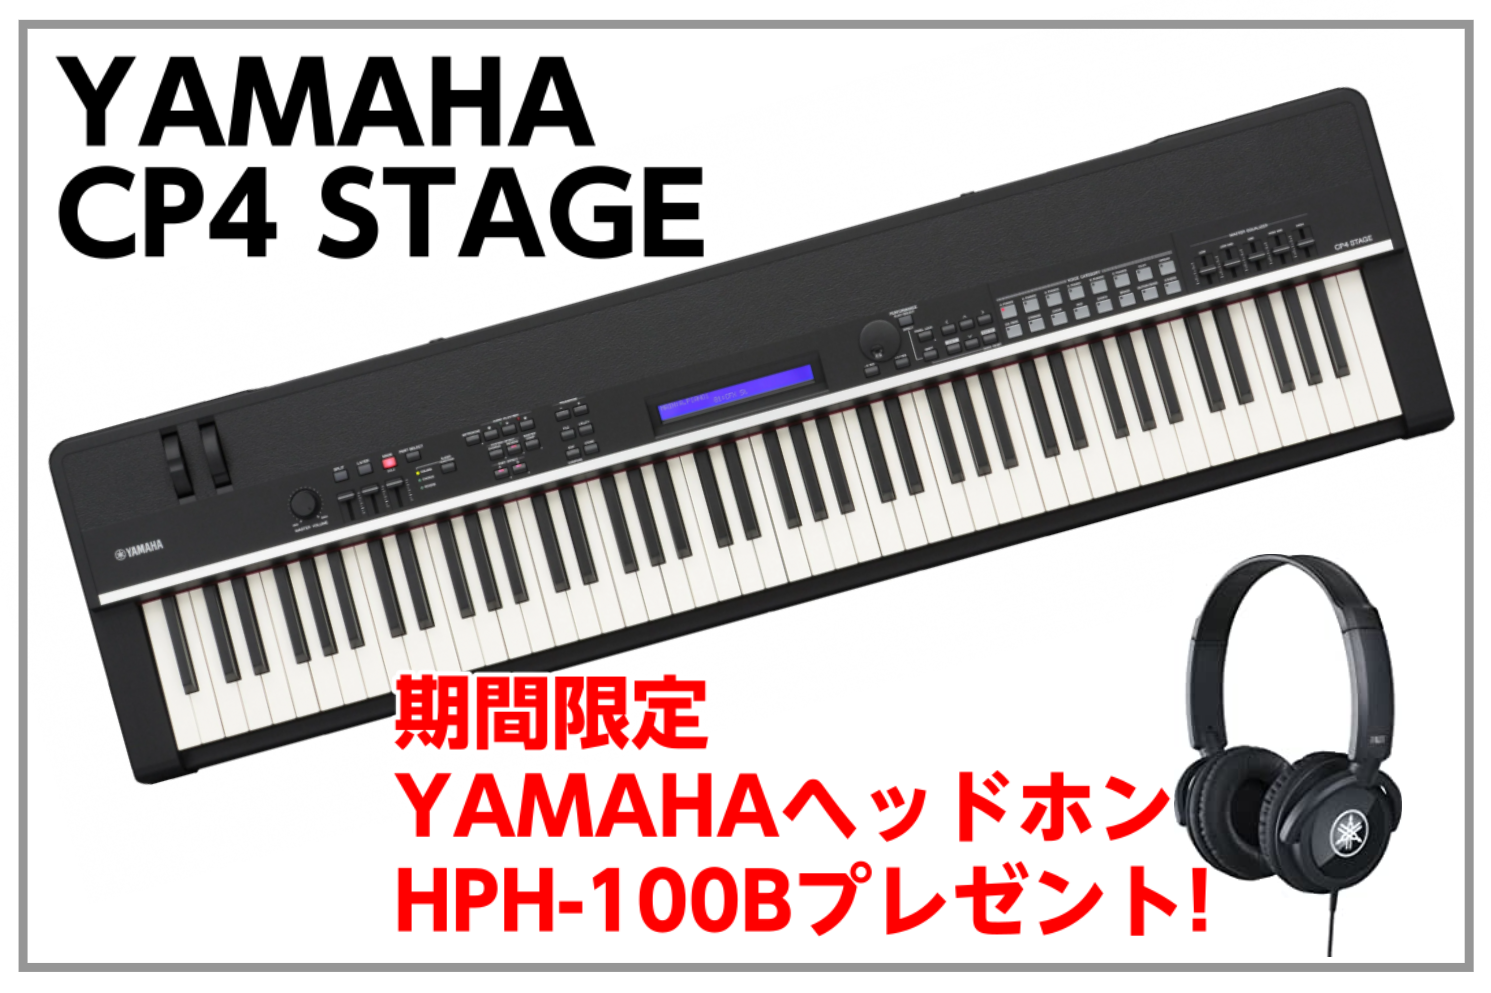 【期間限定】YAMAHA CP4 STAGEを購入するとYAMAHA HPH-100Bをプレゼント!!